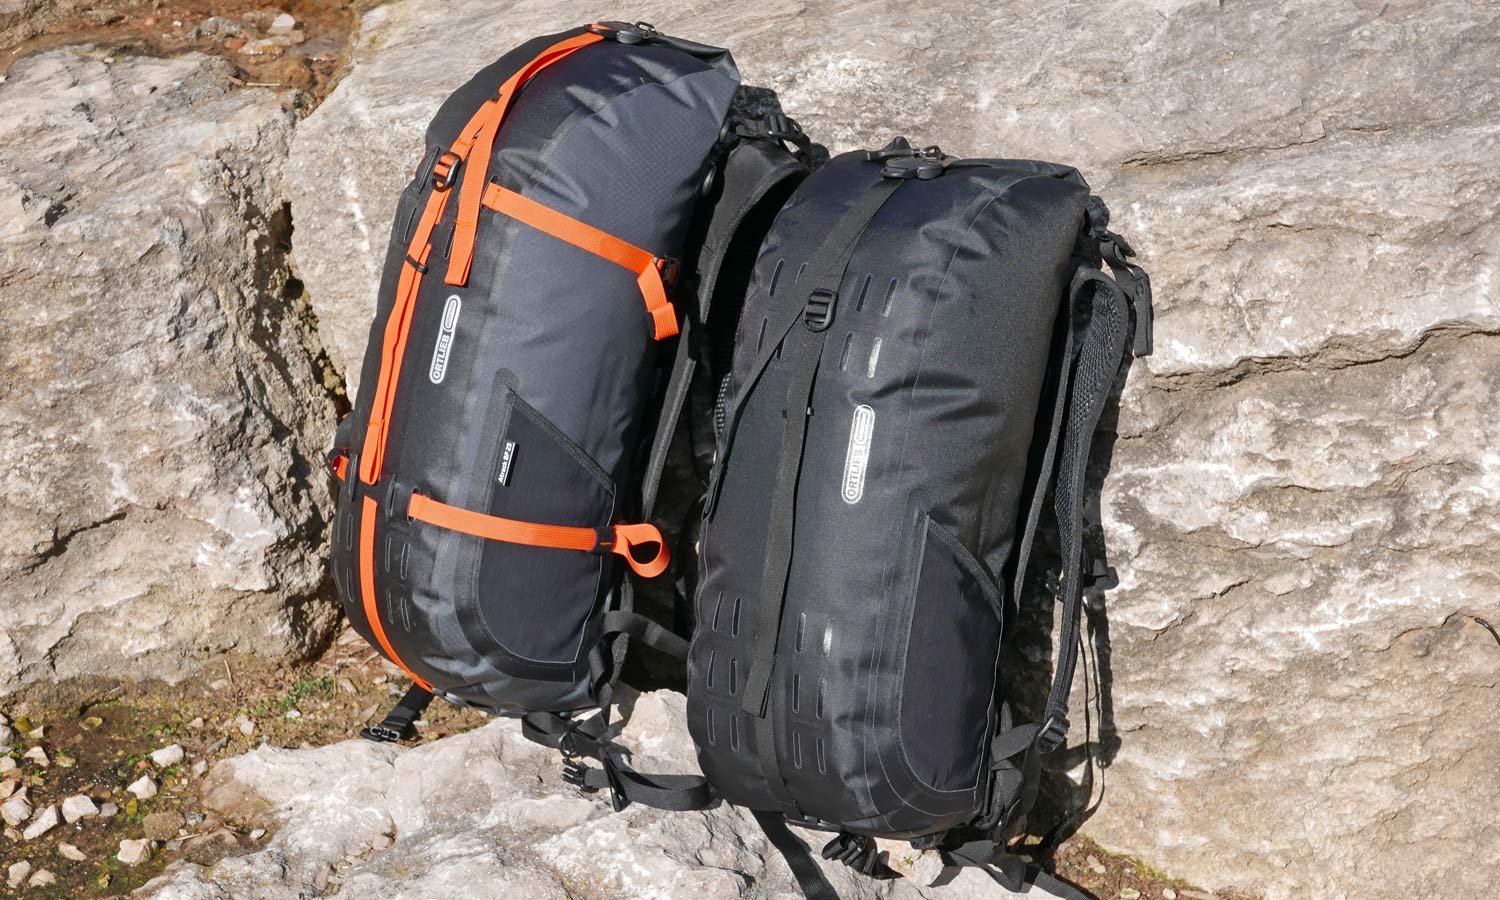 Ortlieb Atrack BP backpack, 25L modular waterproof bikepacking backpack made in Germany